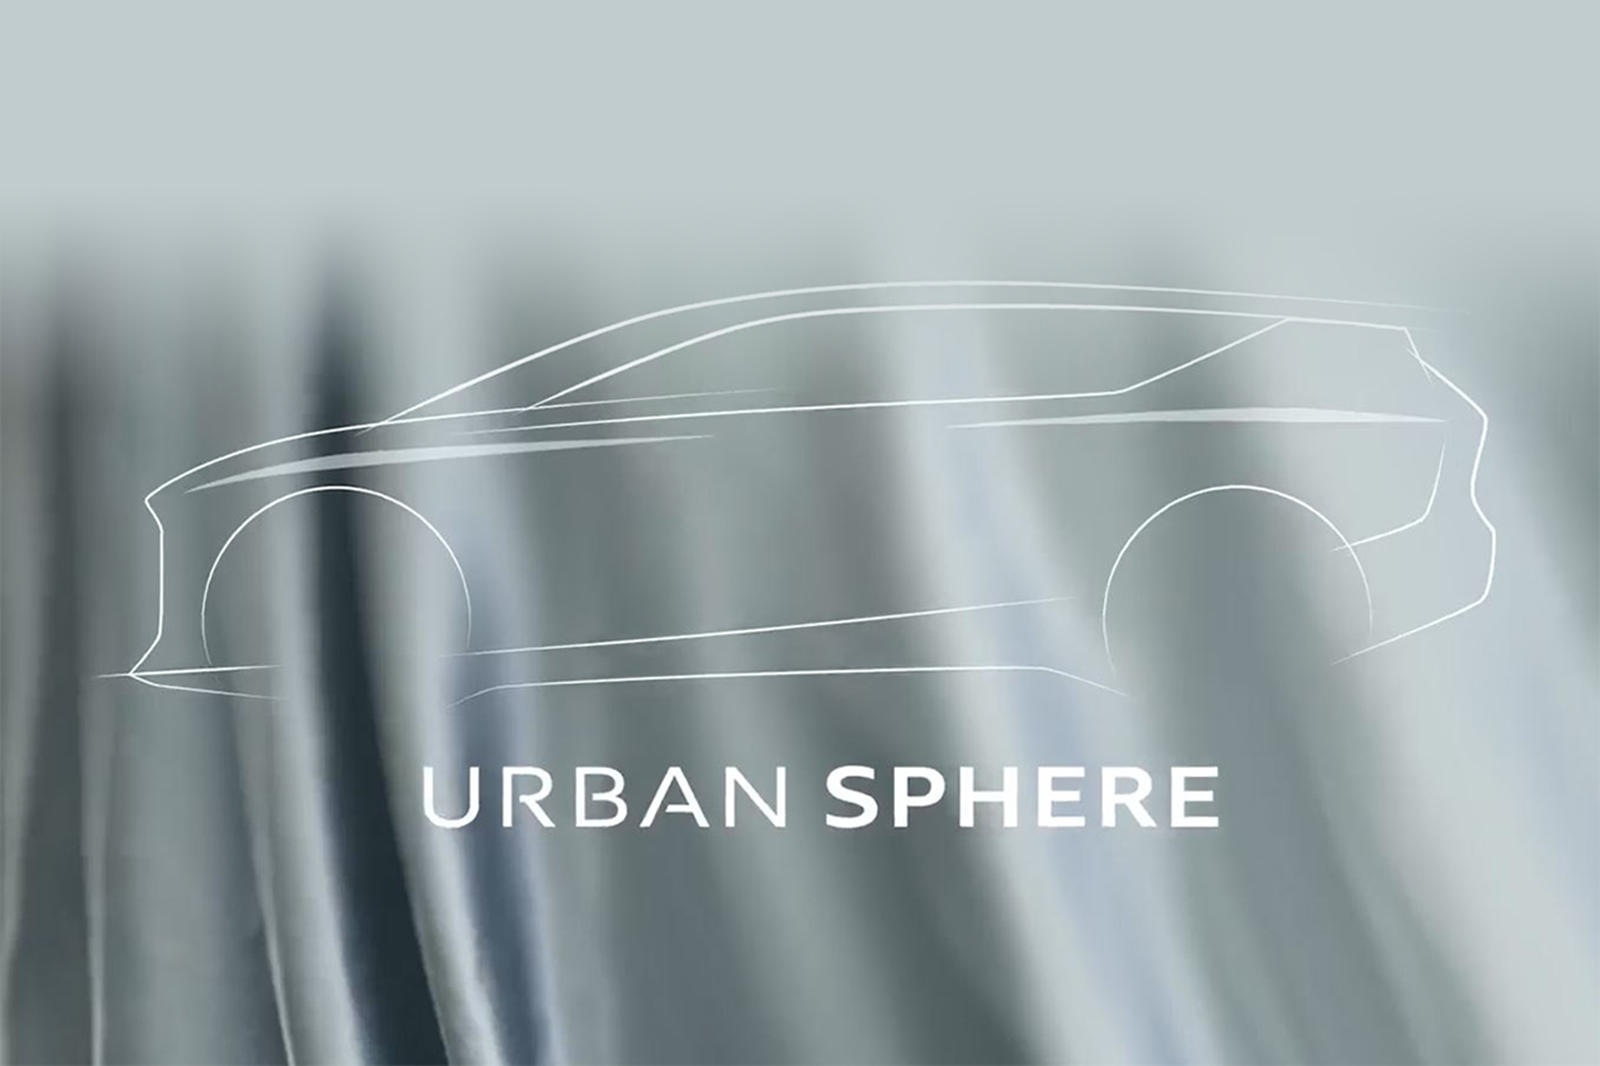 В видеоролике на LinkedIn глава отдела дизайна Марк Лихте и старший вице-президент бренда Audi Хенрик Вендерс показали трио захватывающих концепт-каров Audi. Они известны как Sky Sphere, Grand Sphere и Urban Sphere, и все они будут раскрыты в течение